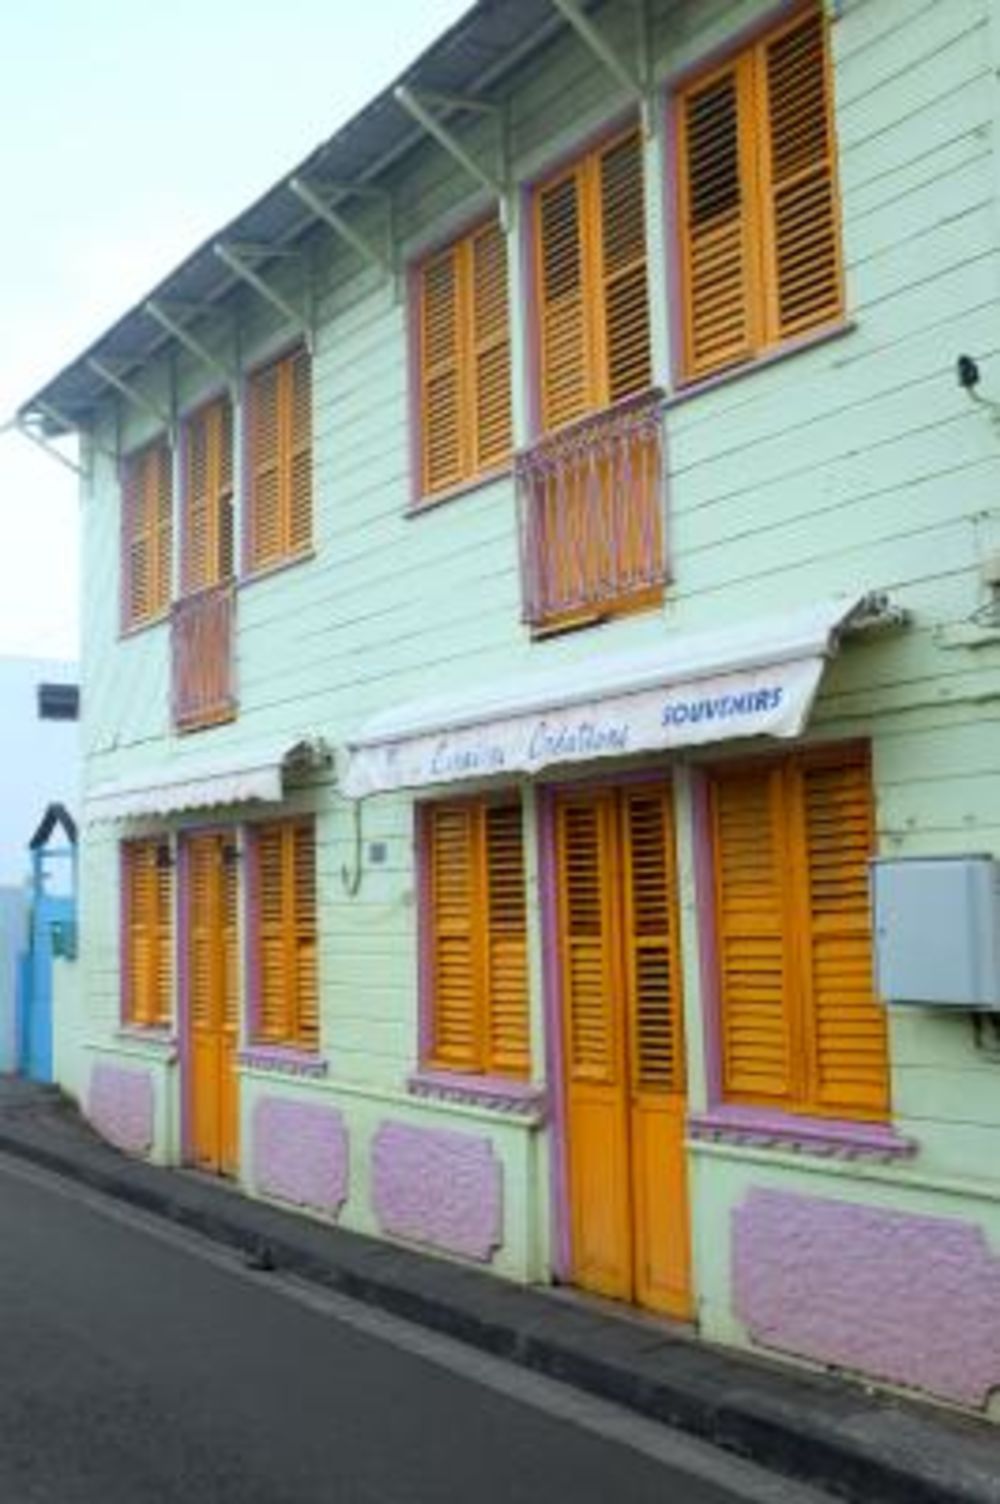 REtour de 10 jours en Martinique du 24 février au 4 mars 2020 - Gini78